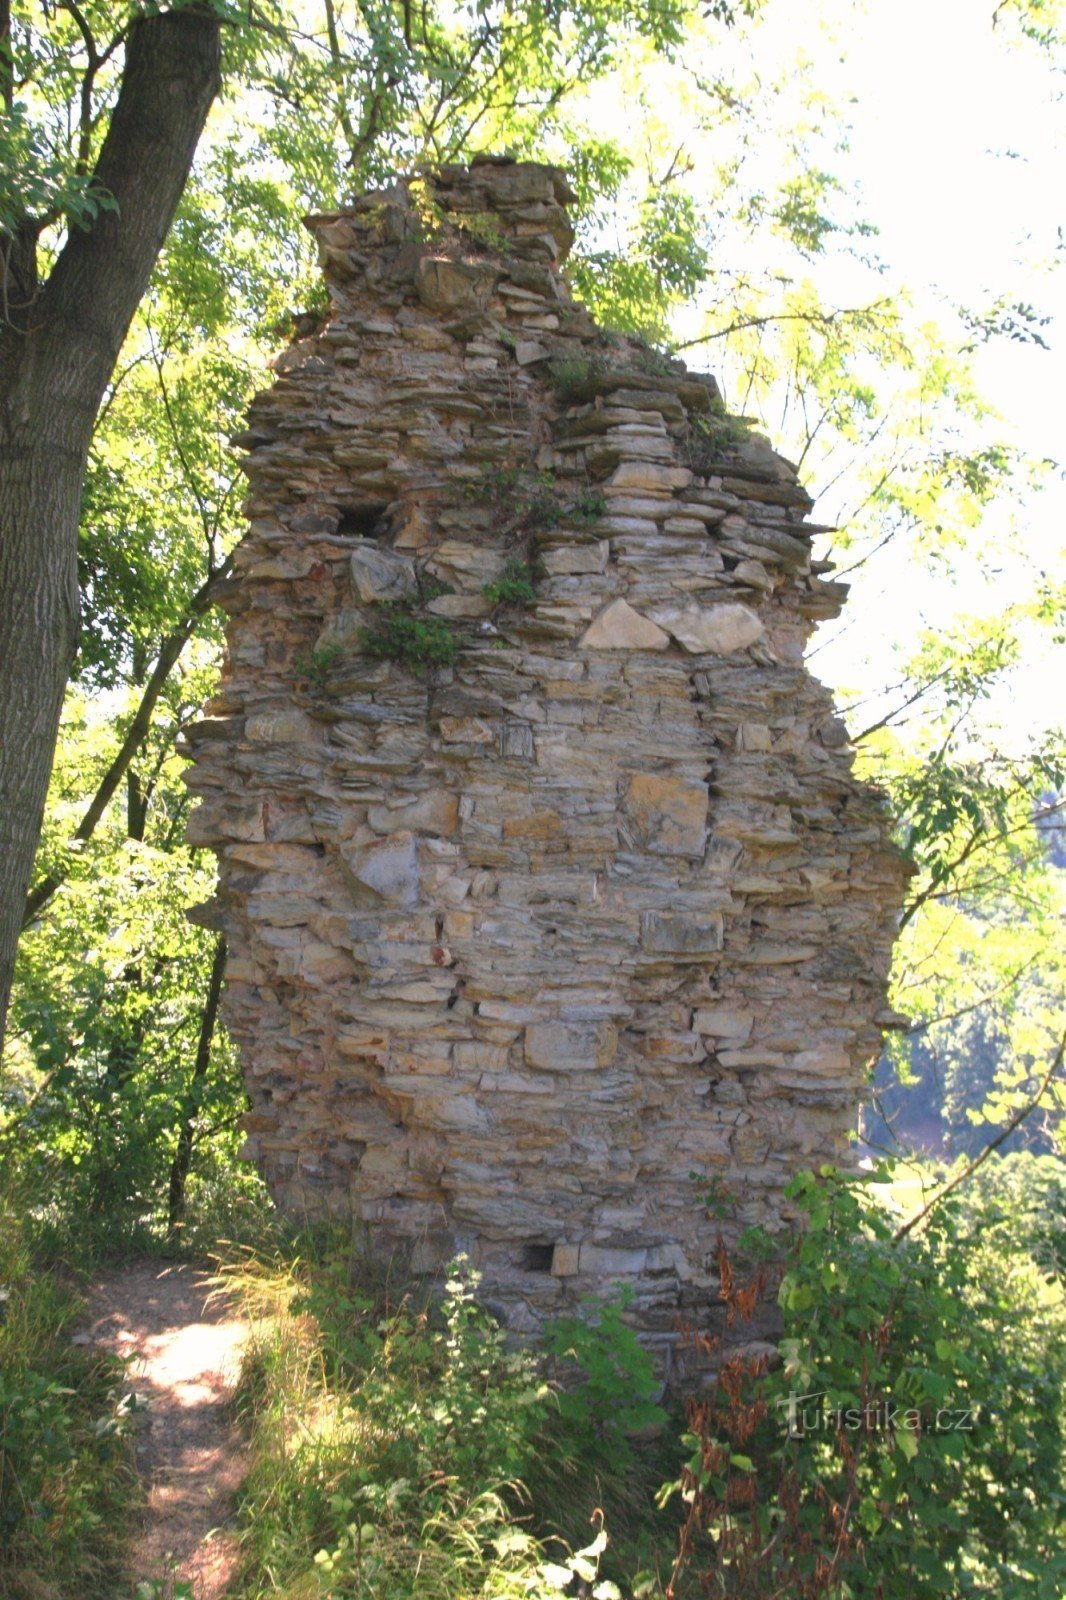 Τα ερείπια της τοιχοποιίας του κάστρου